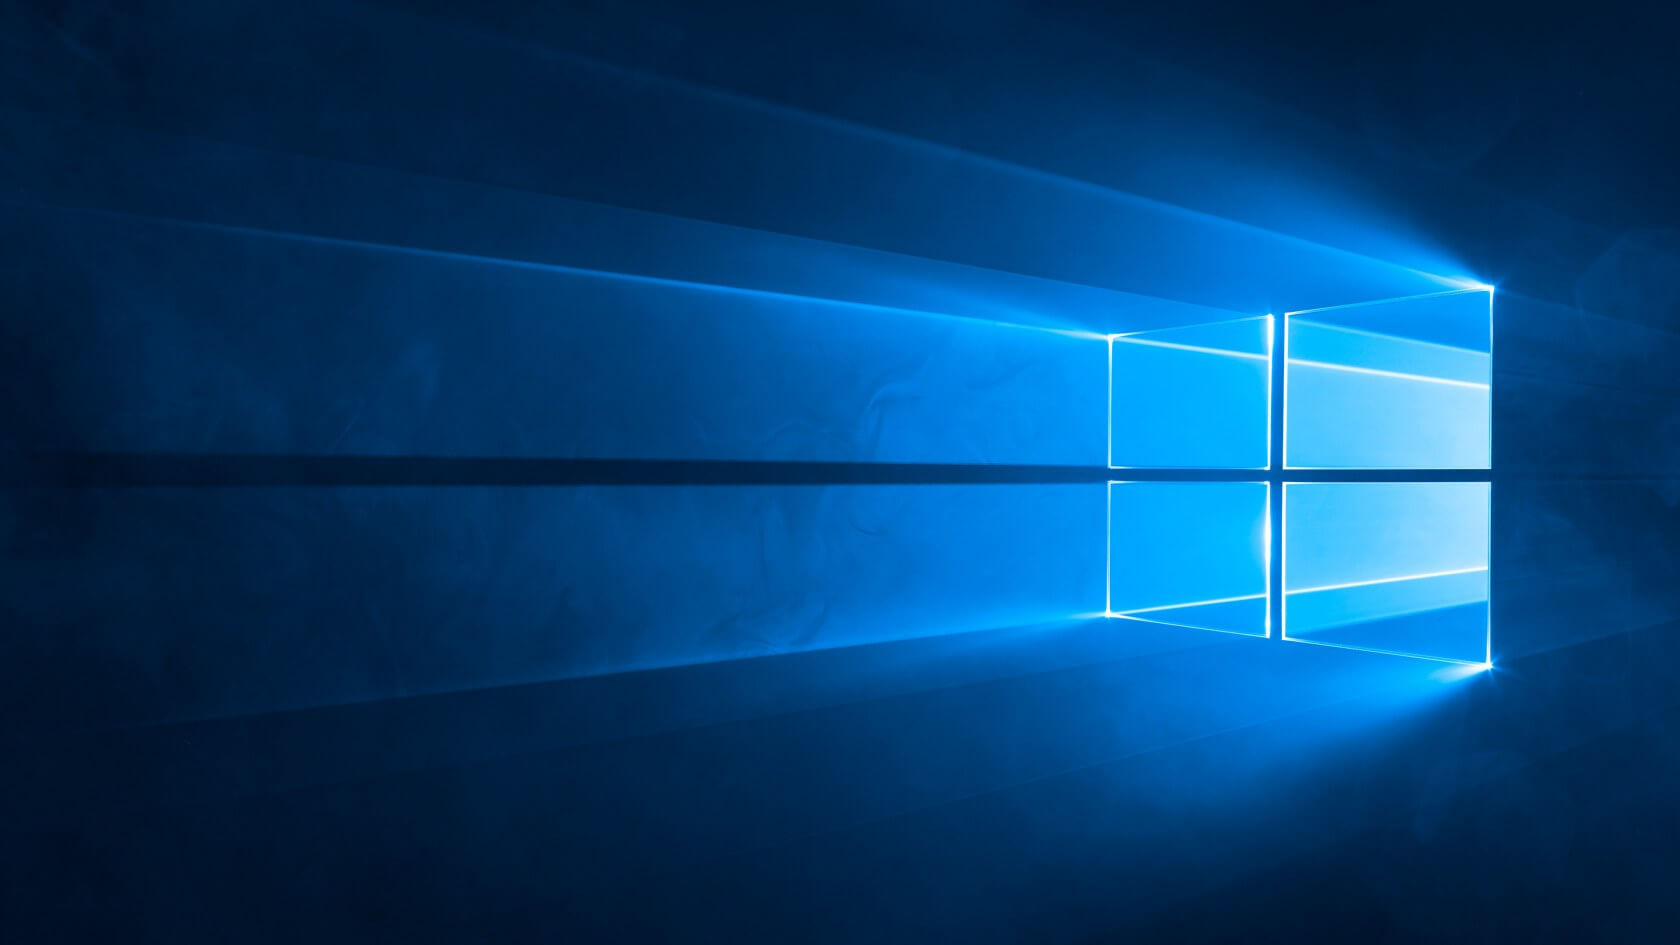 Microsoft is suspending optional Windows 10 updates because of the coronavirus